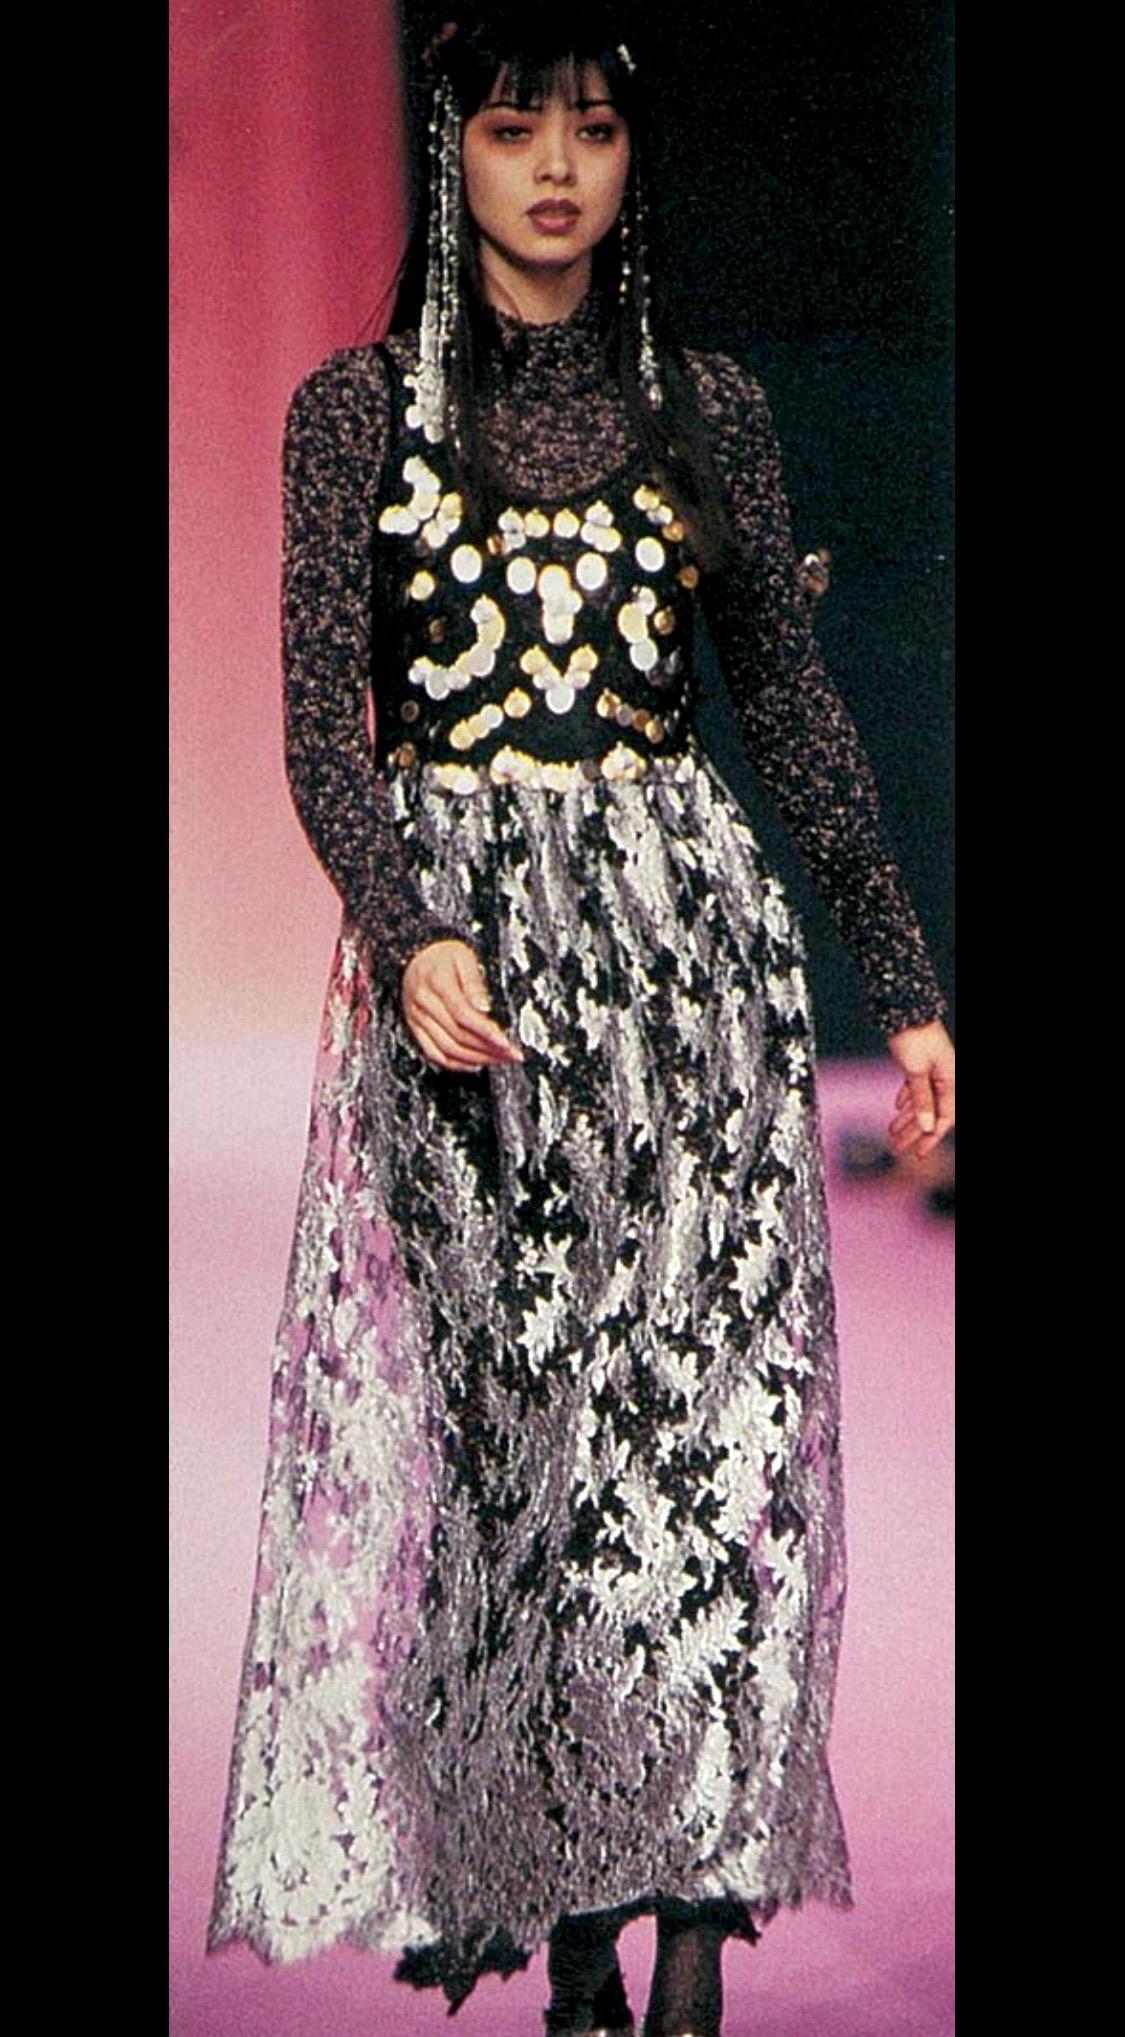 Voici un magnifique ensemble pantalon Christian Lacroix en dentelle noire et argentée. Issue de la collection Automne/Hiver 1994, cette incroyable combinaison de dentelle et de tulle est apparue pour la première fois sous la forme d'une jupe longue